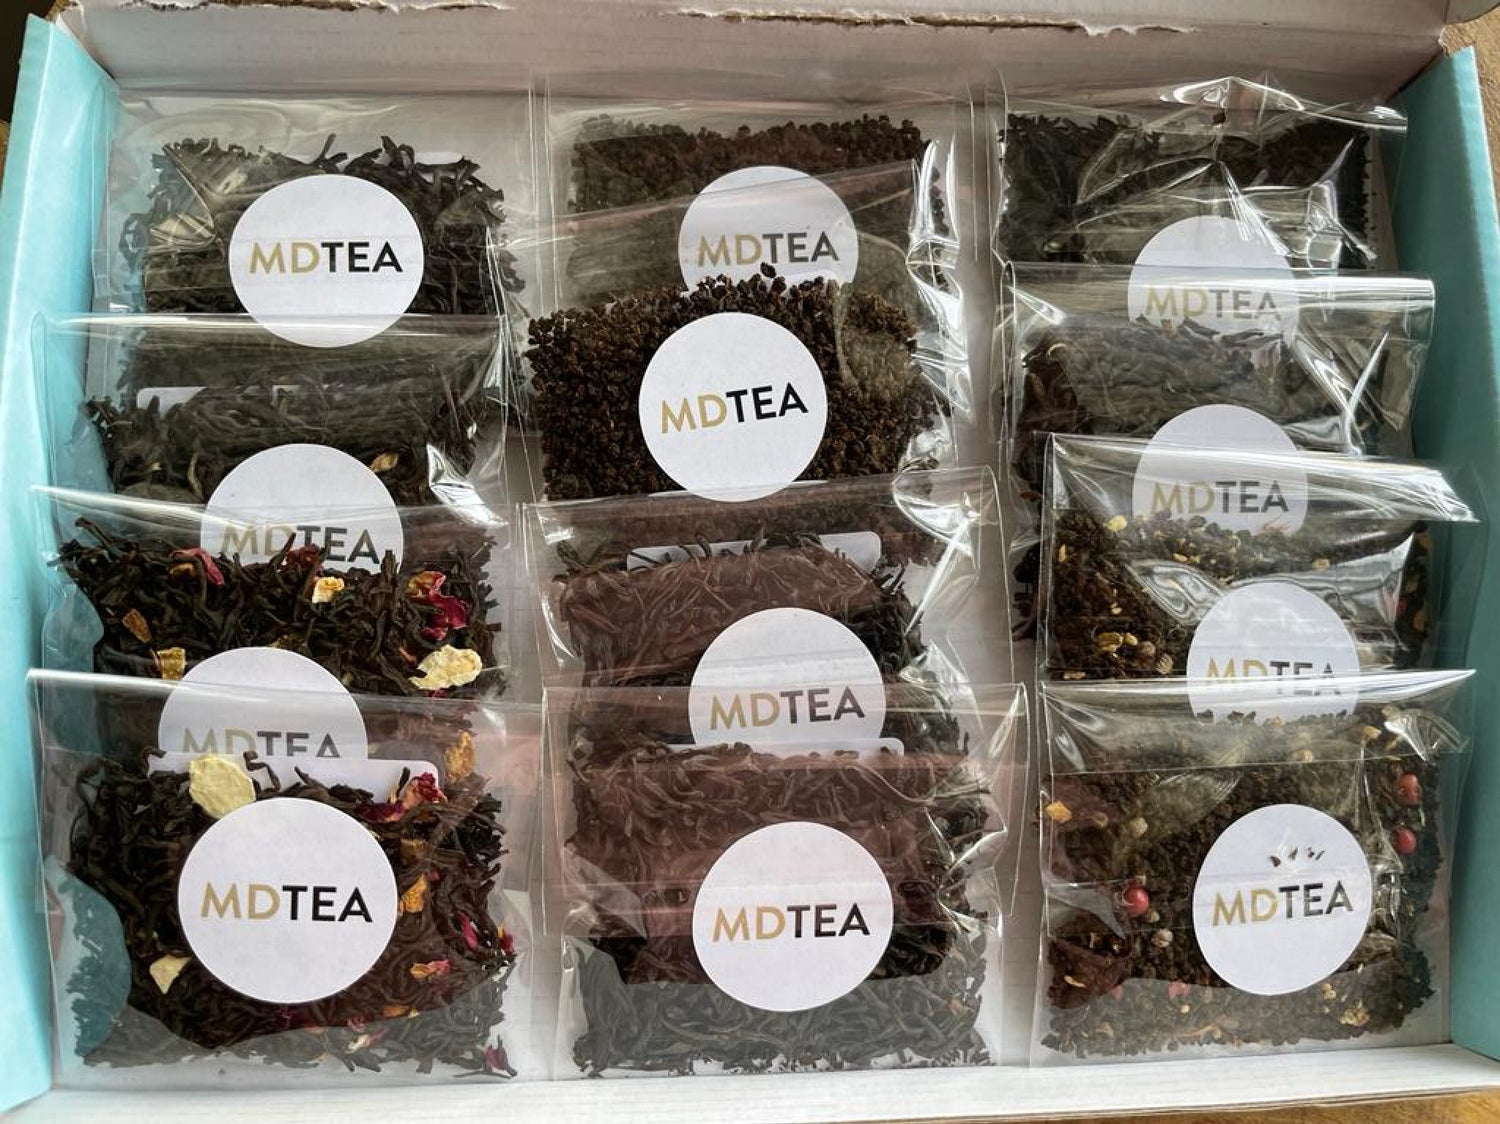 Black Tea Taster Box - making 24 cups | MDTEA